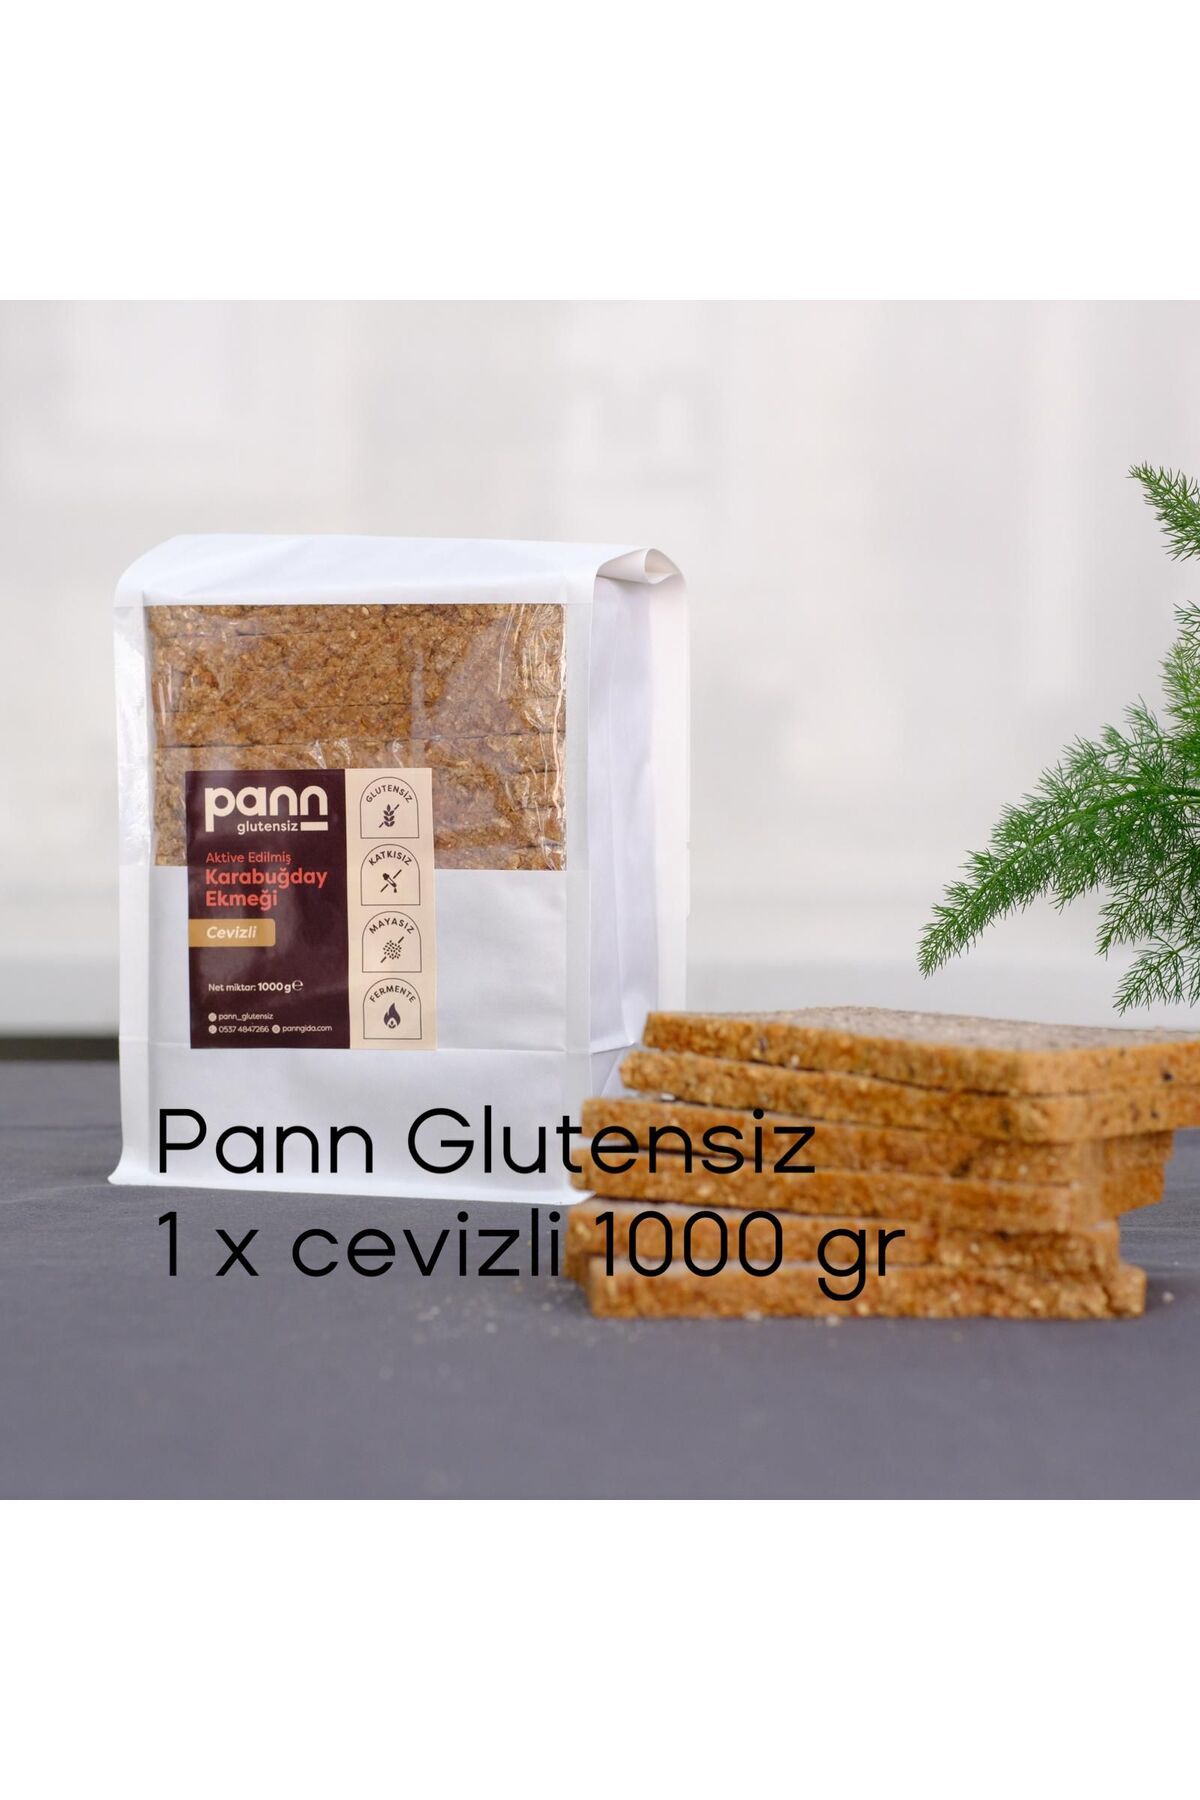 PANN Glutensiz Karabuğday Ekmeği, Cevizli_1x1000gr_mayasız, Aktive Edilmiş Karabuğday Tohumu